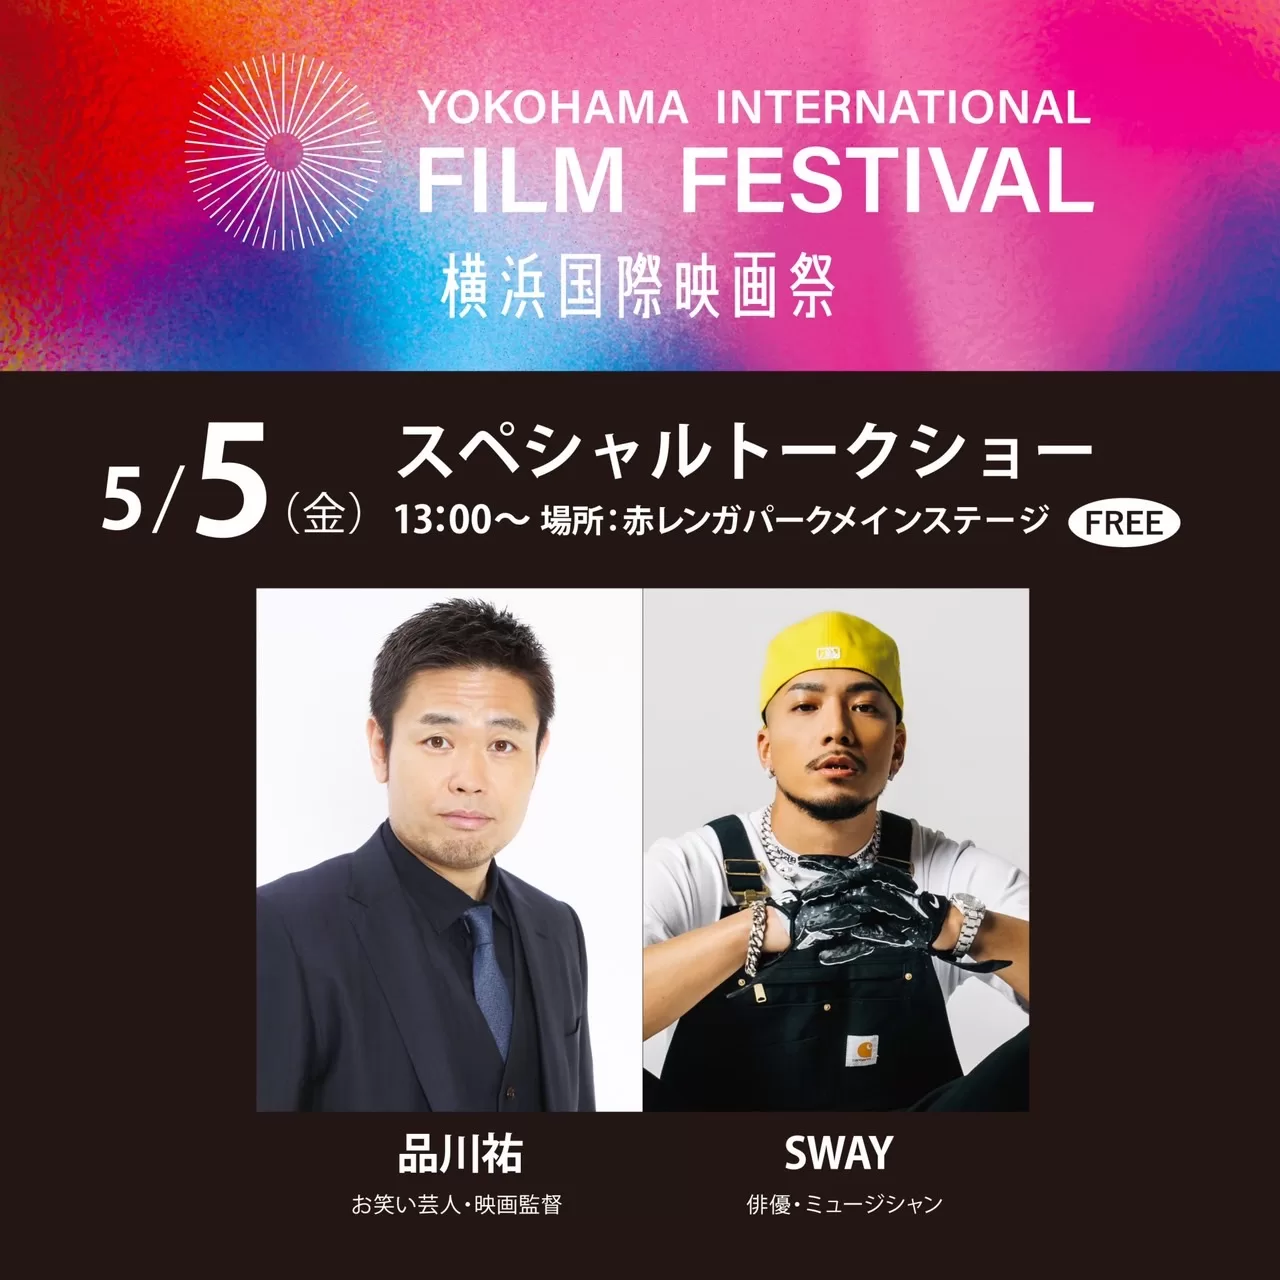 5月5日横浜国際映画祭 スペシャルトークショーにSWAY出演